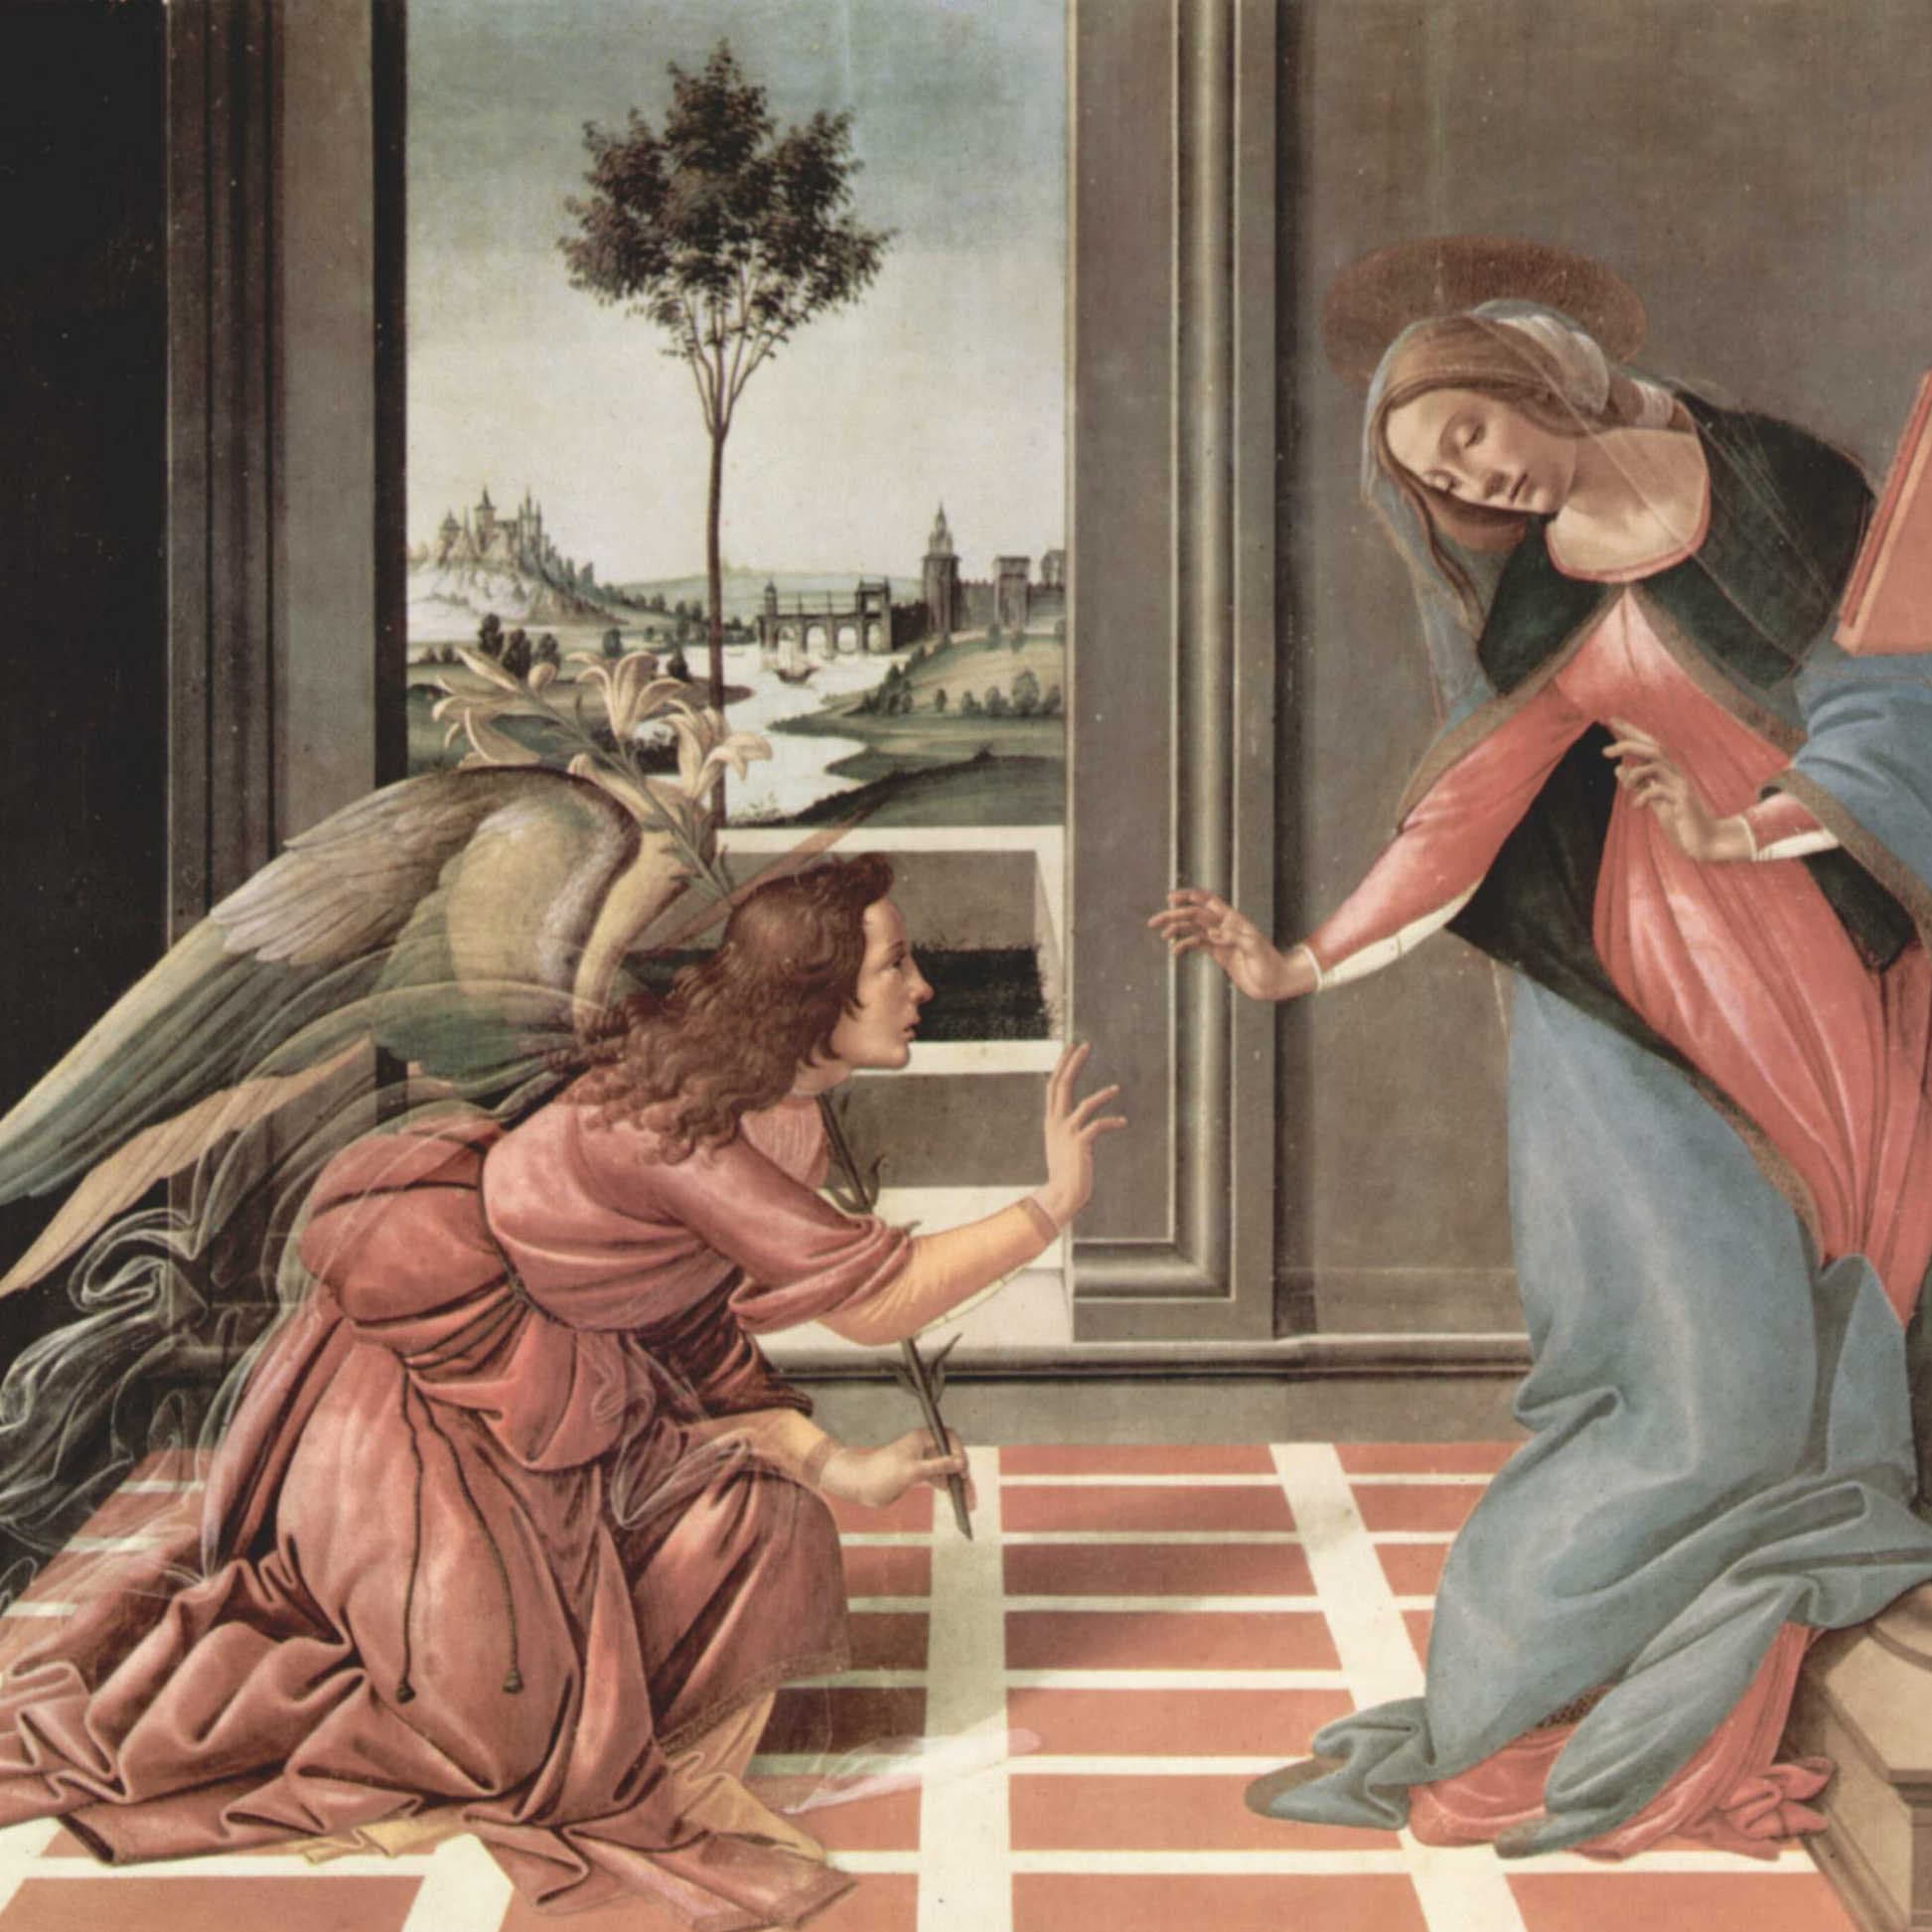 受胎告知 1489年頃のボッティチェッリに描かれ、ウフィツィ美術館に収蔵されている。